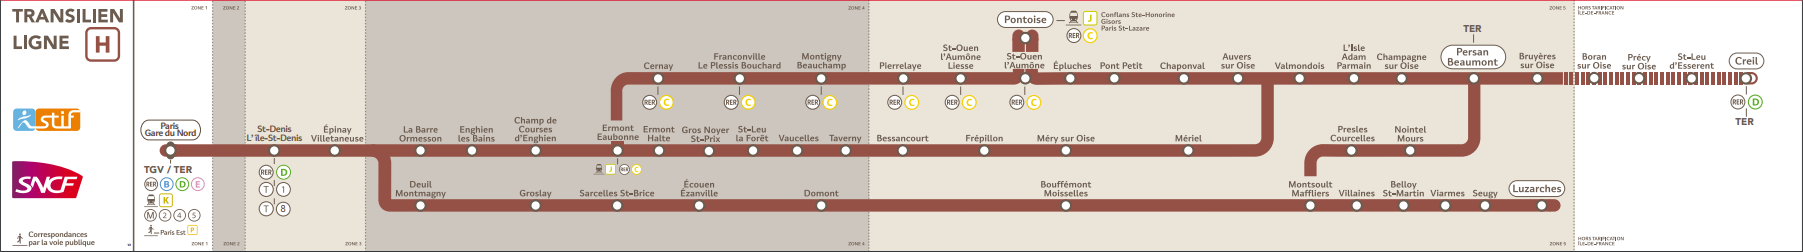 Le plan de la ligne H du Transilien - DR : SNCF